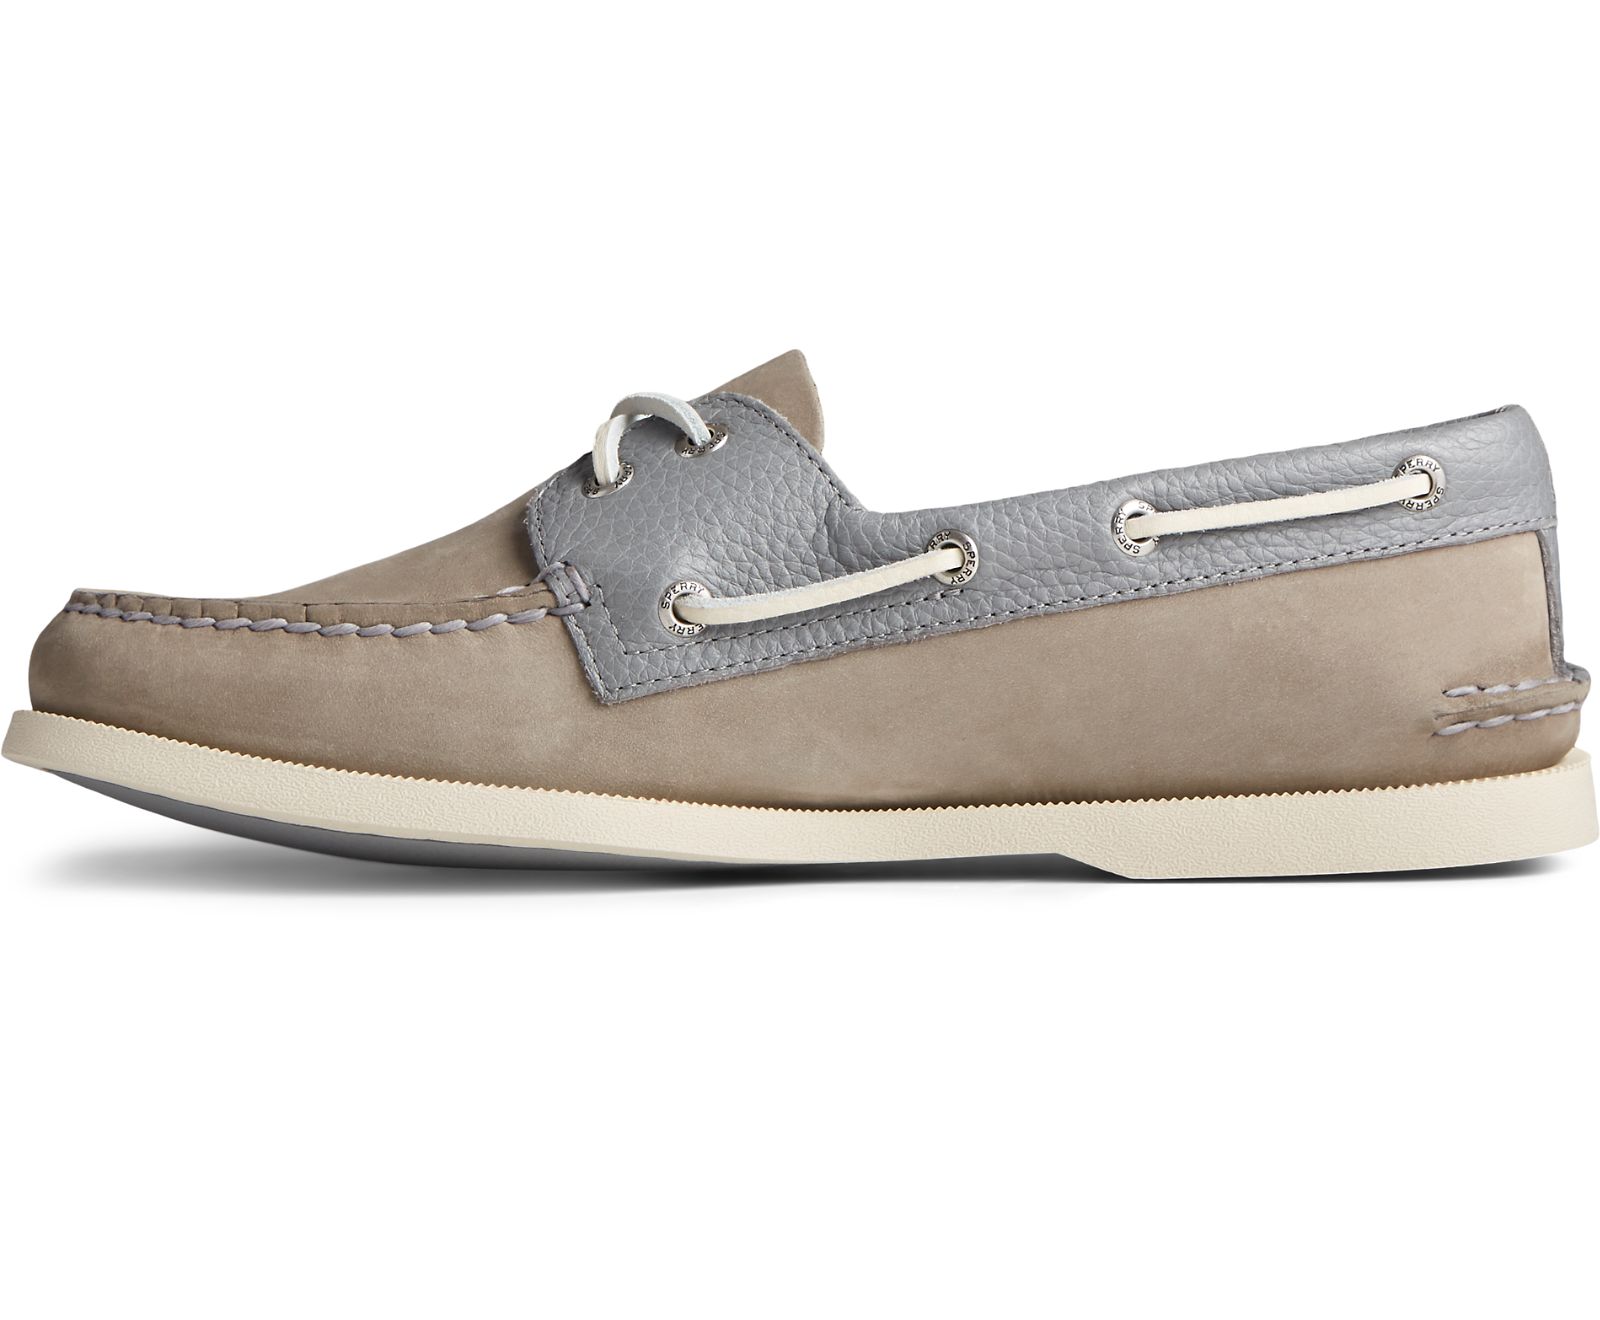 Men's Authentic Original 2-Eye Tumbled Leather Nubuck Boat Shoe - Grey